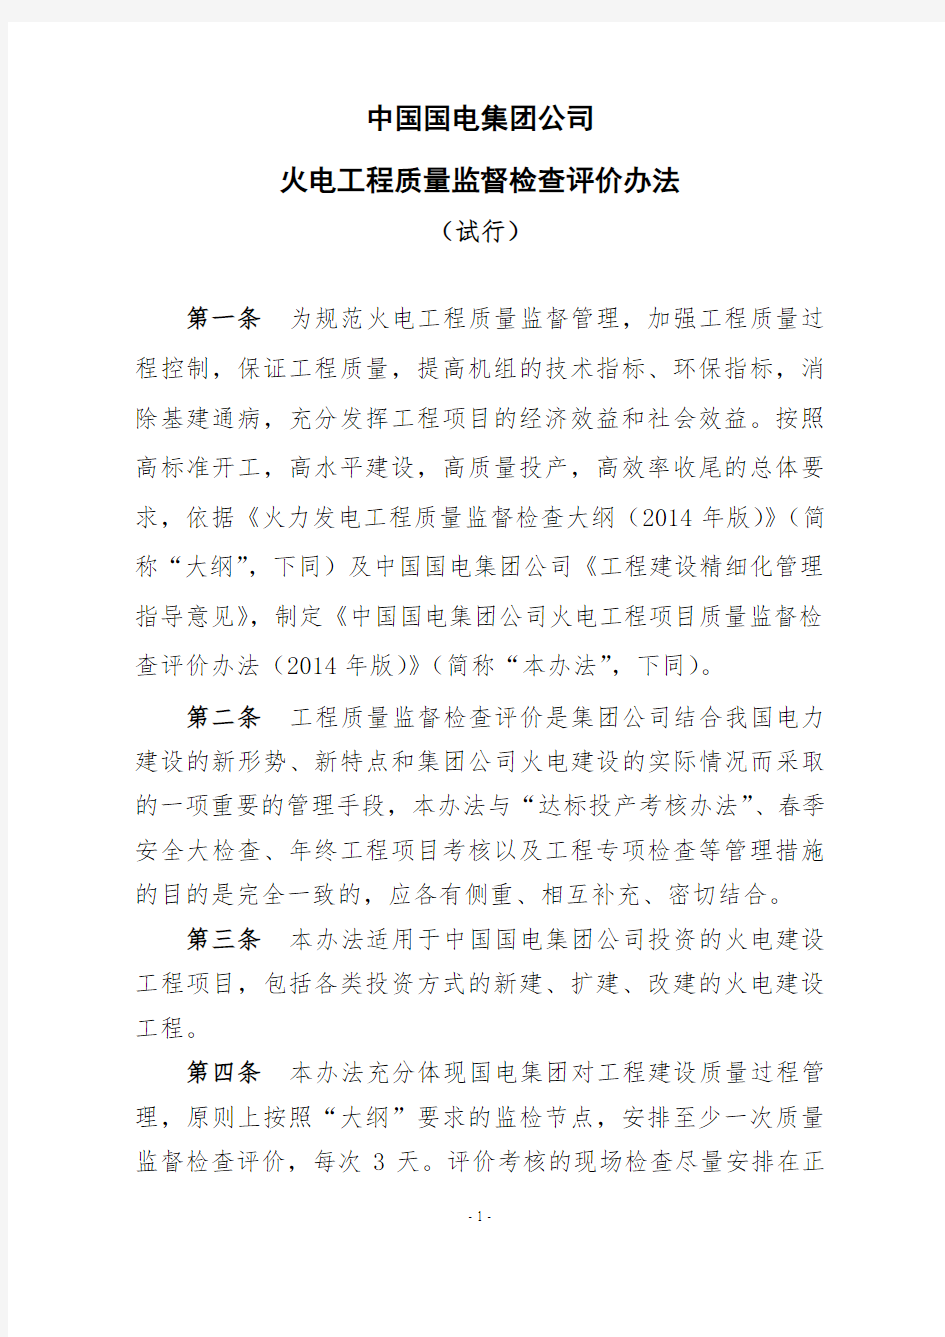 中国国电集团公司火电工程质量监督检查评价管理办法(20